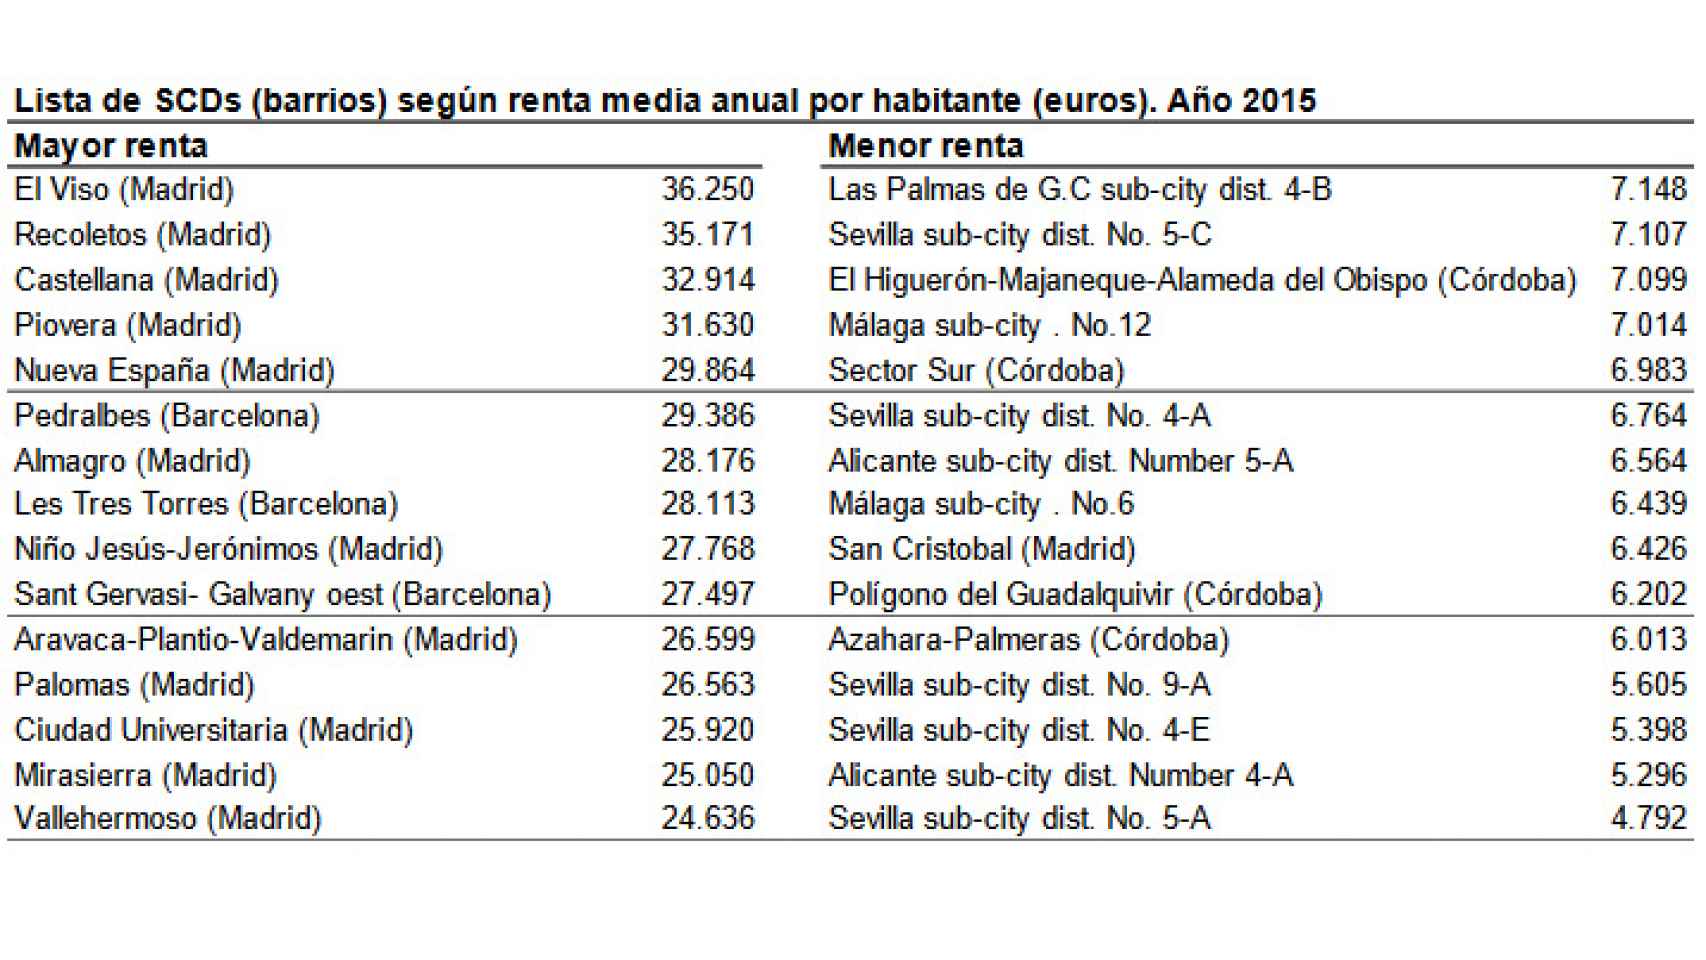 Estudio con los 15 barrios más ricos y más pobres de España publicado por el Instituto Nacional de Estadística (INE) en junio de 2018.